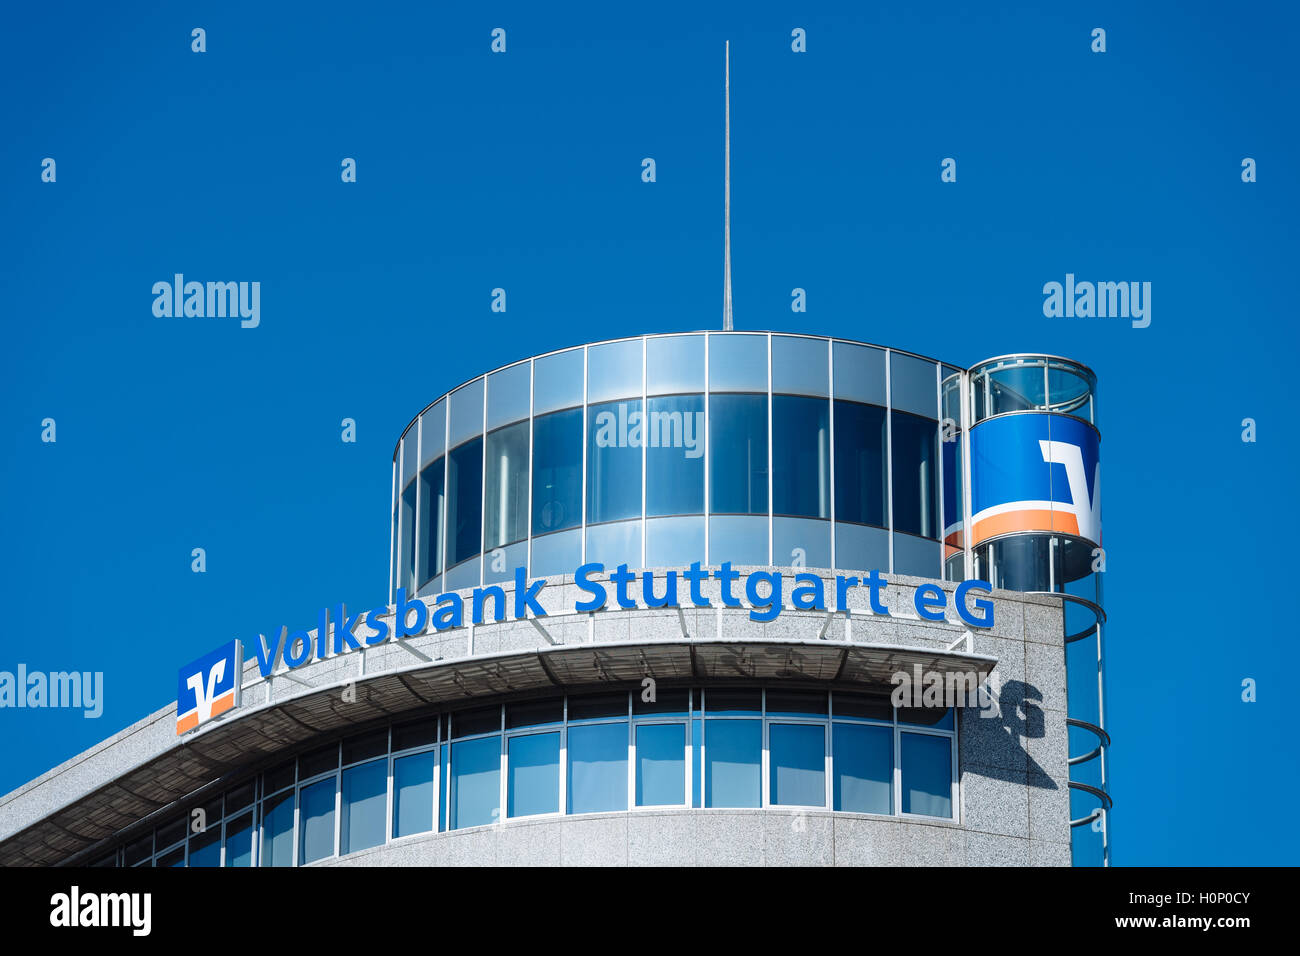 Volksbank Stuttgart eG administration building, Stuttgart, Baden-Württemberg, Germany Stock Photo